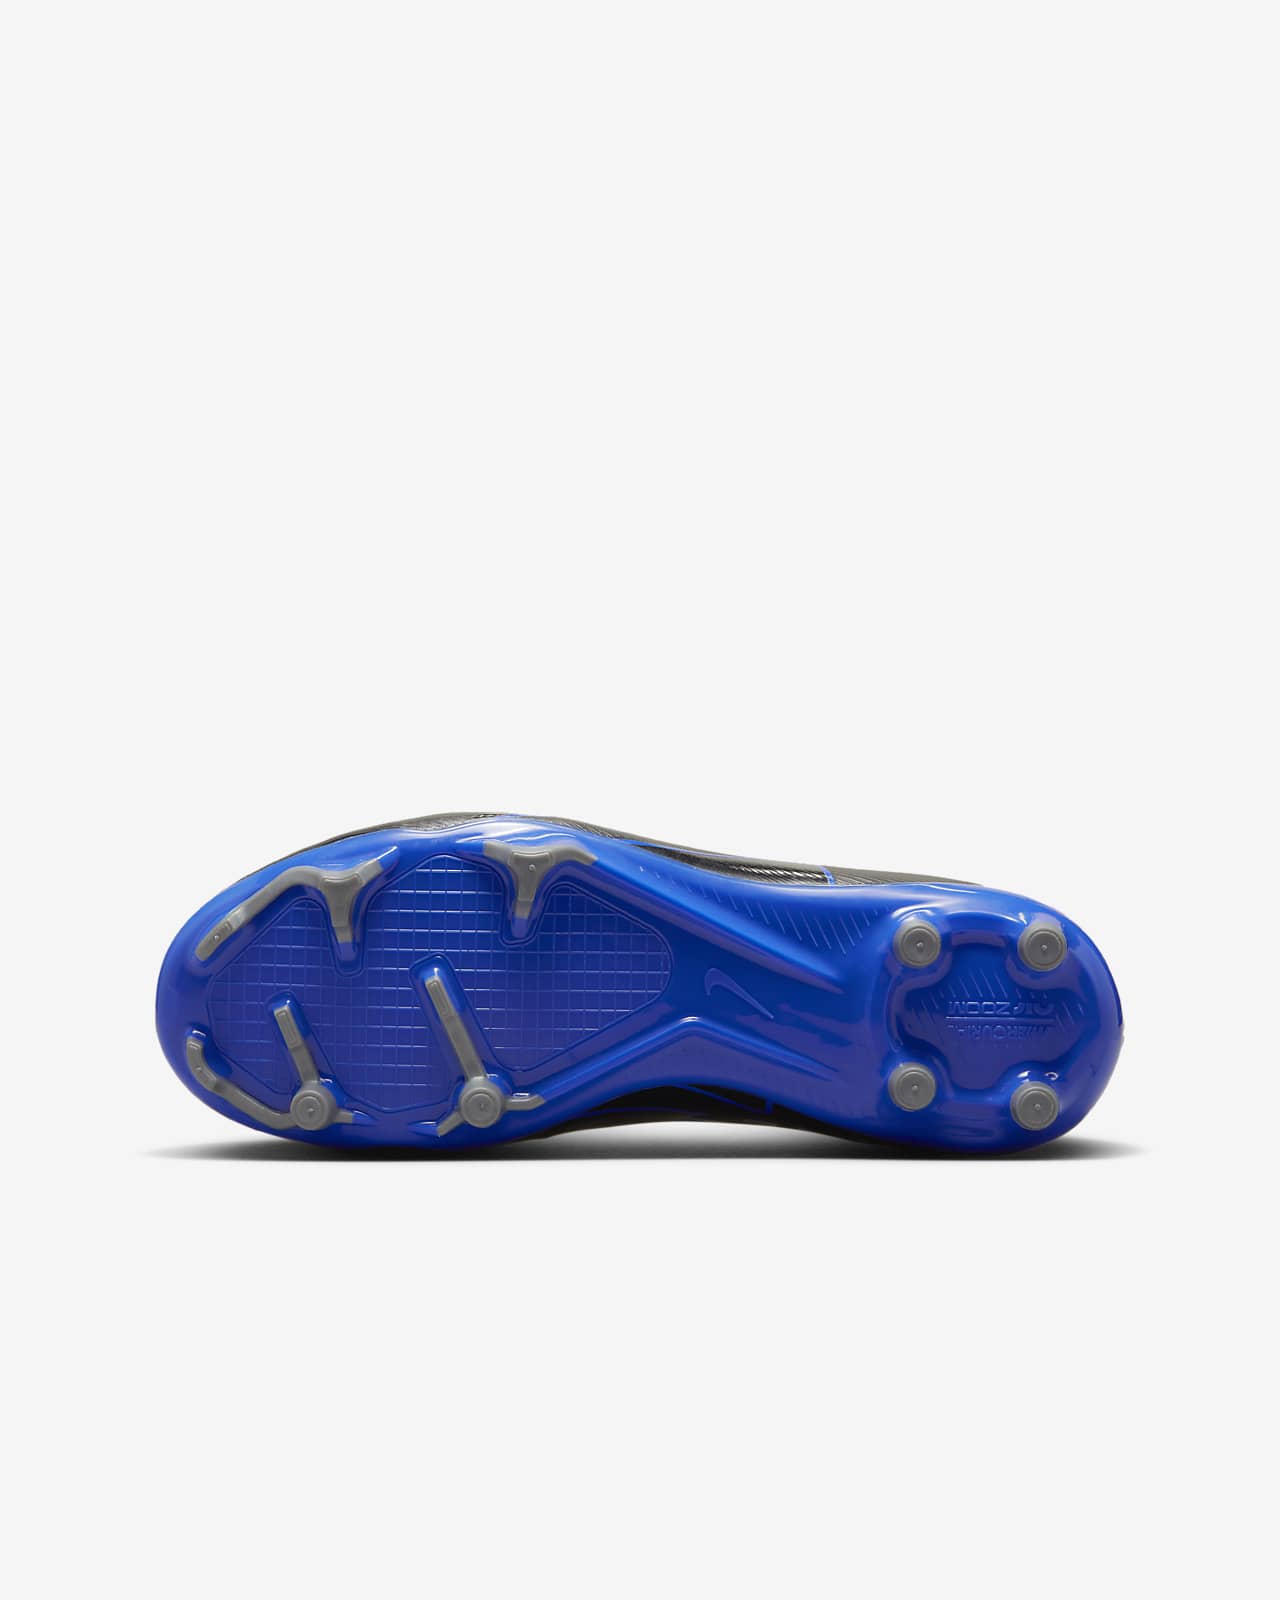 Protege Tibias Nike Mercurial Lite Bleu - Espace Foot